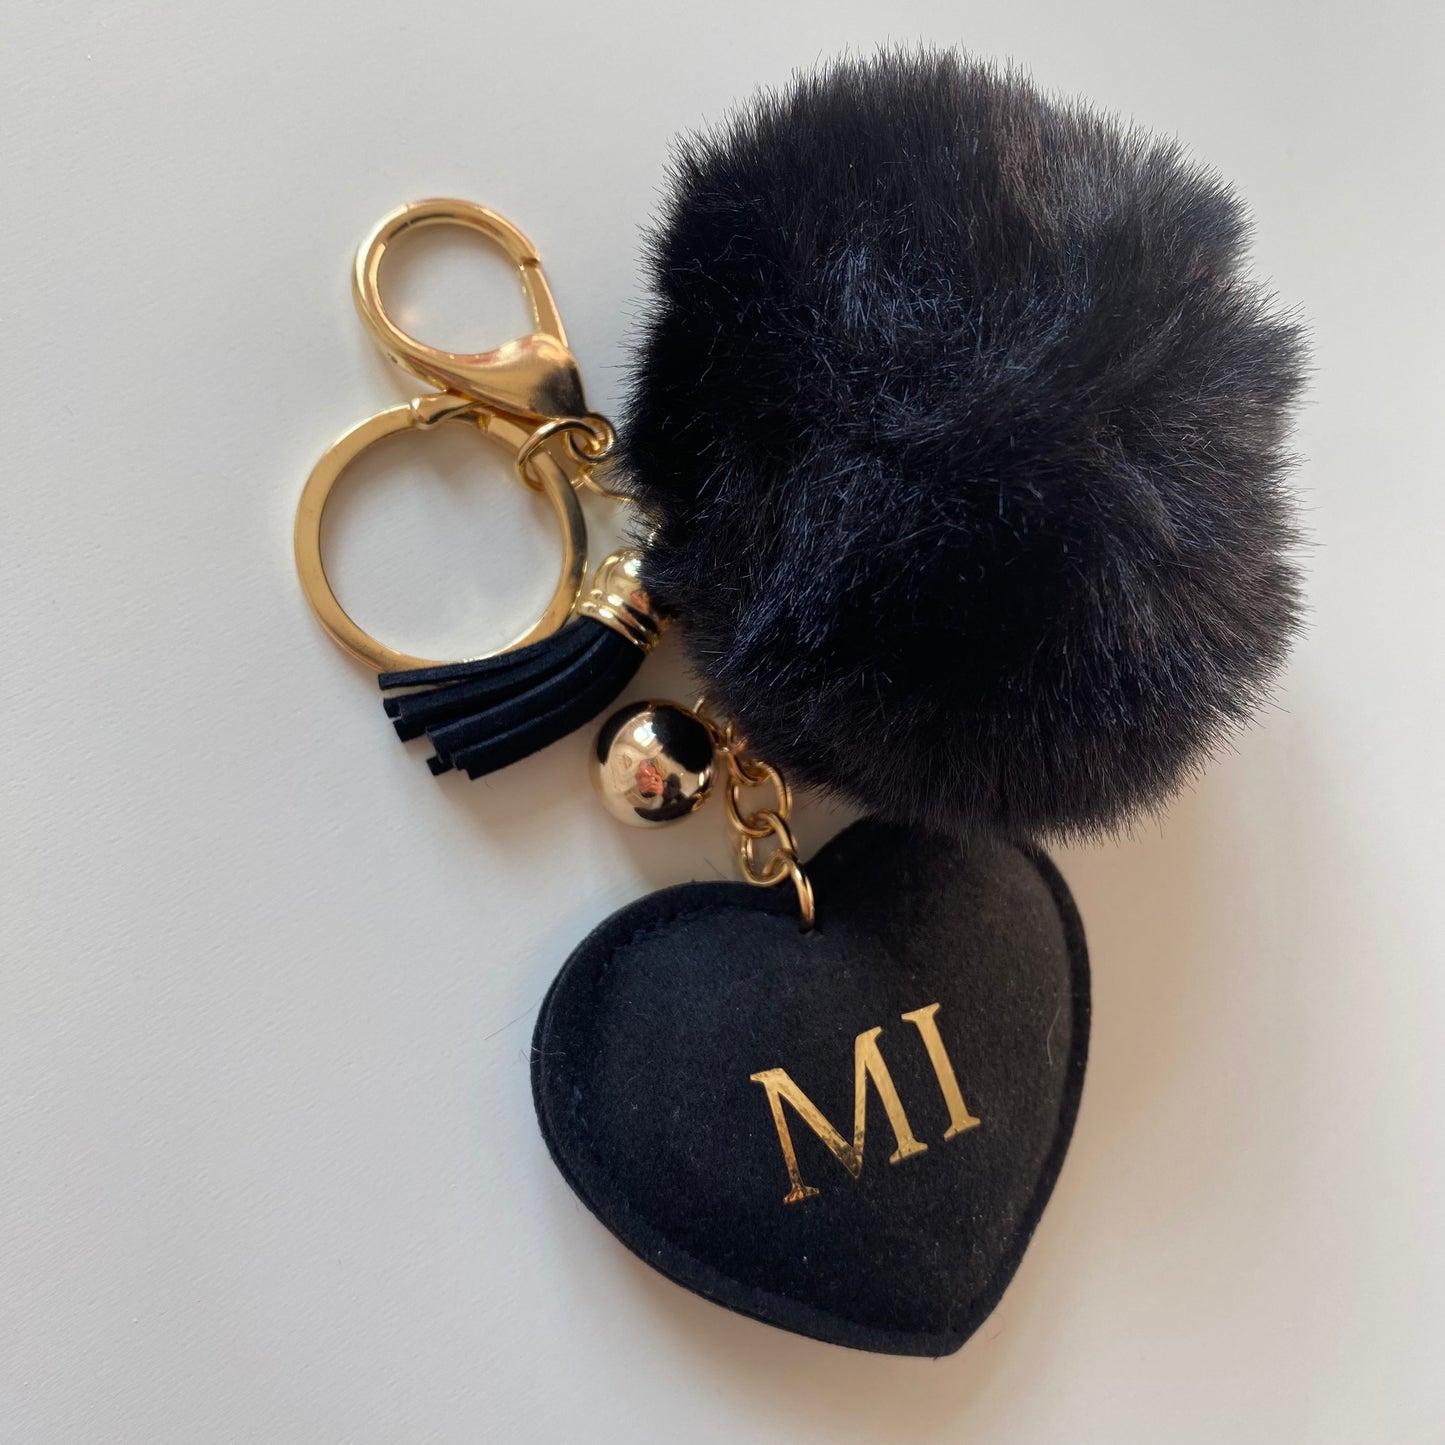 Personalised Diamanté Heart key chains key rings bag charm